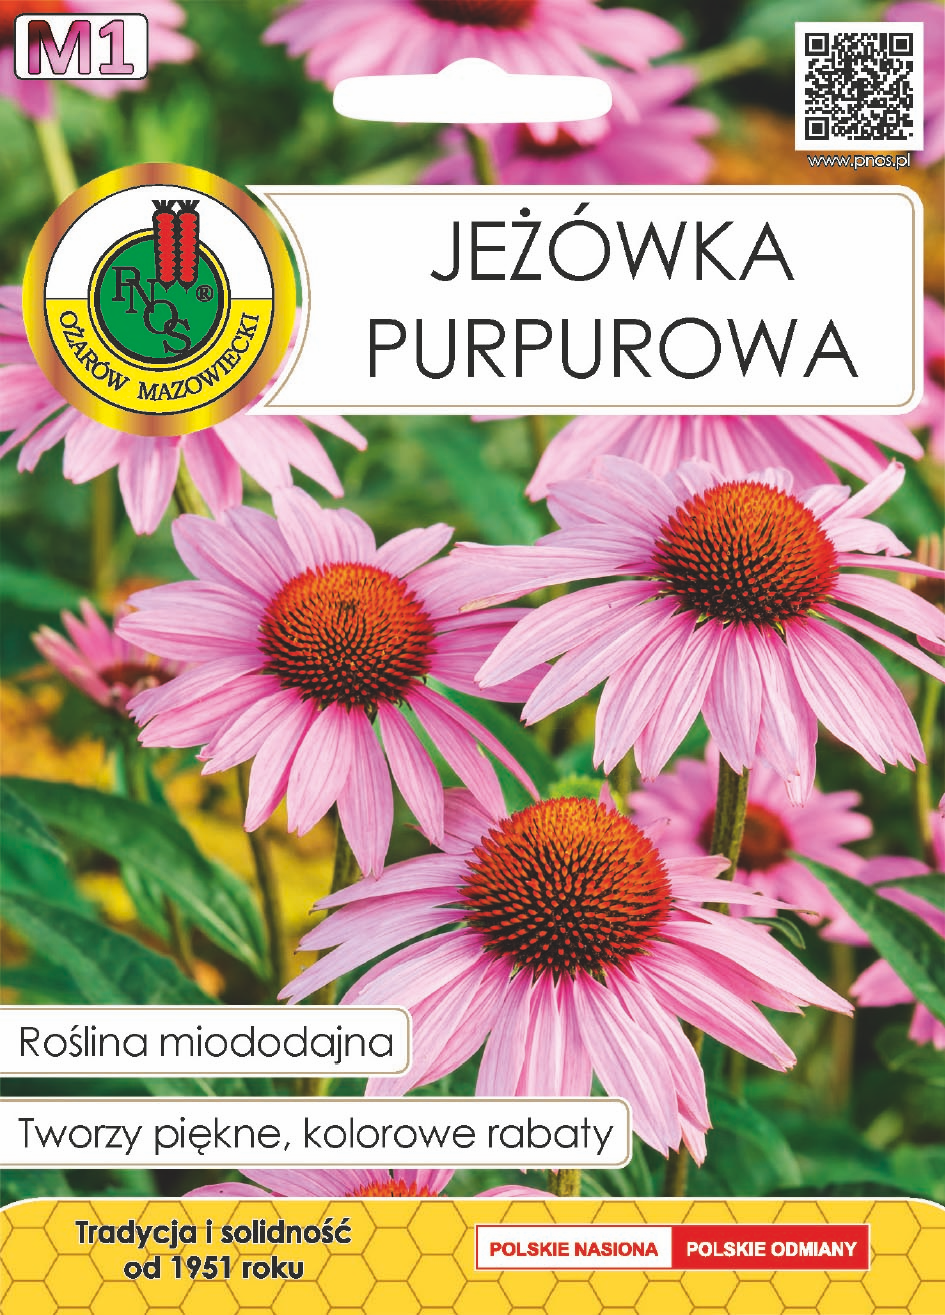 Jewka purpurowa - 1g PNOS (ID:4308)